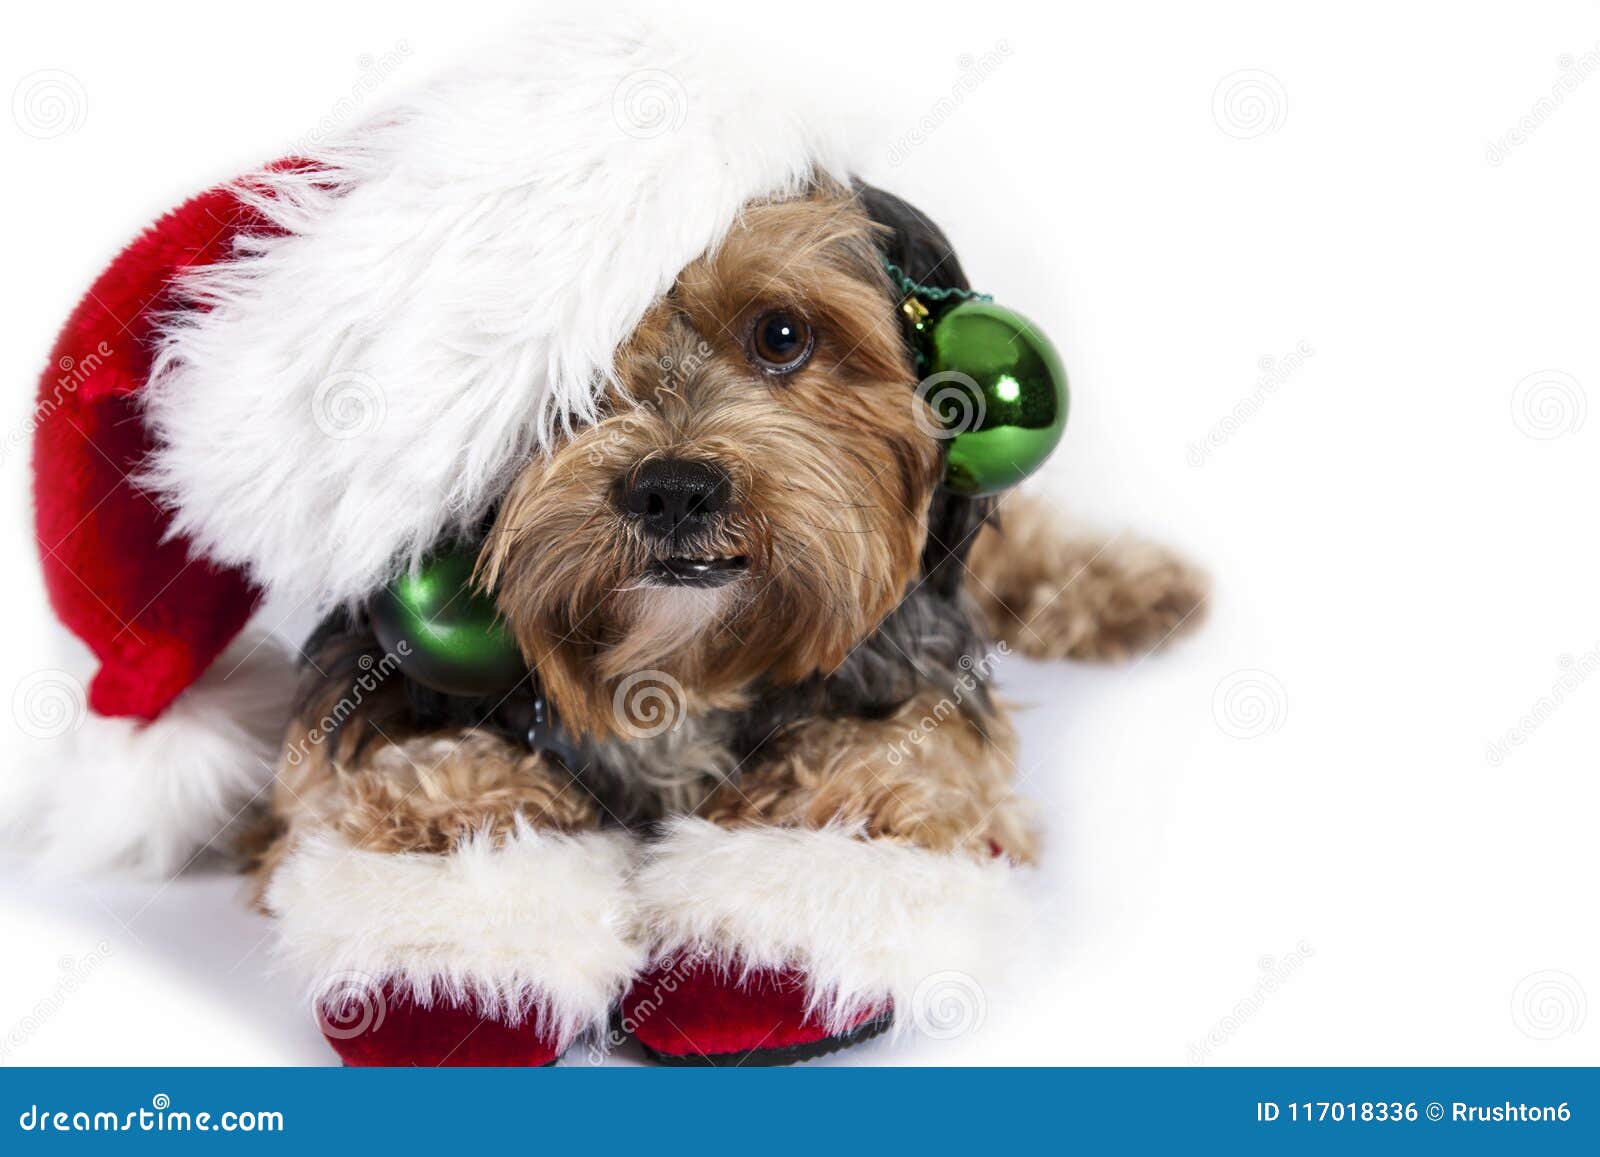 Christmas Dog with Ornaments Stock Photo  Image of adorable, christmas